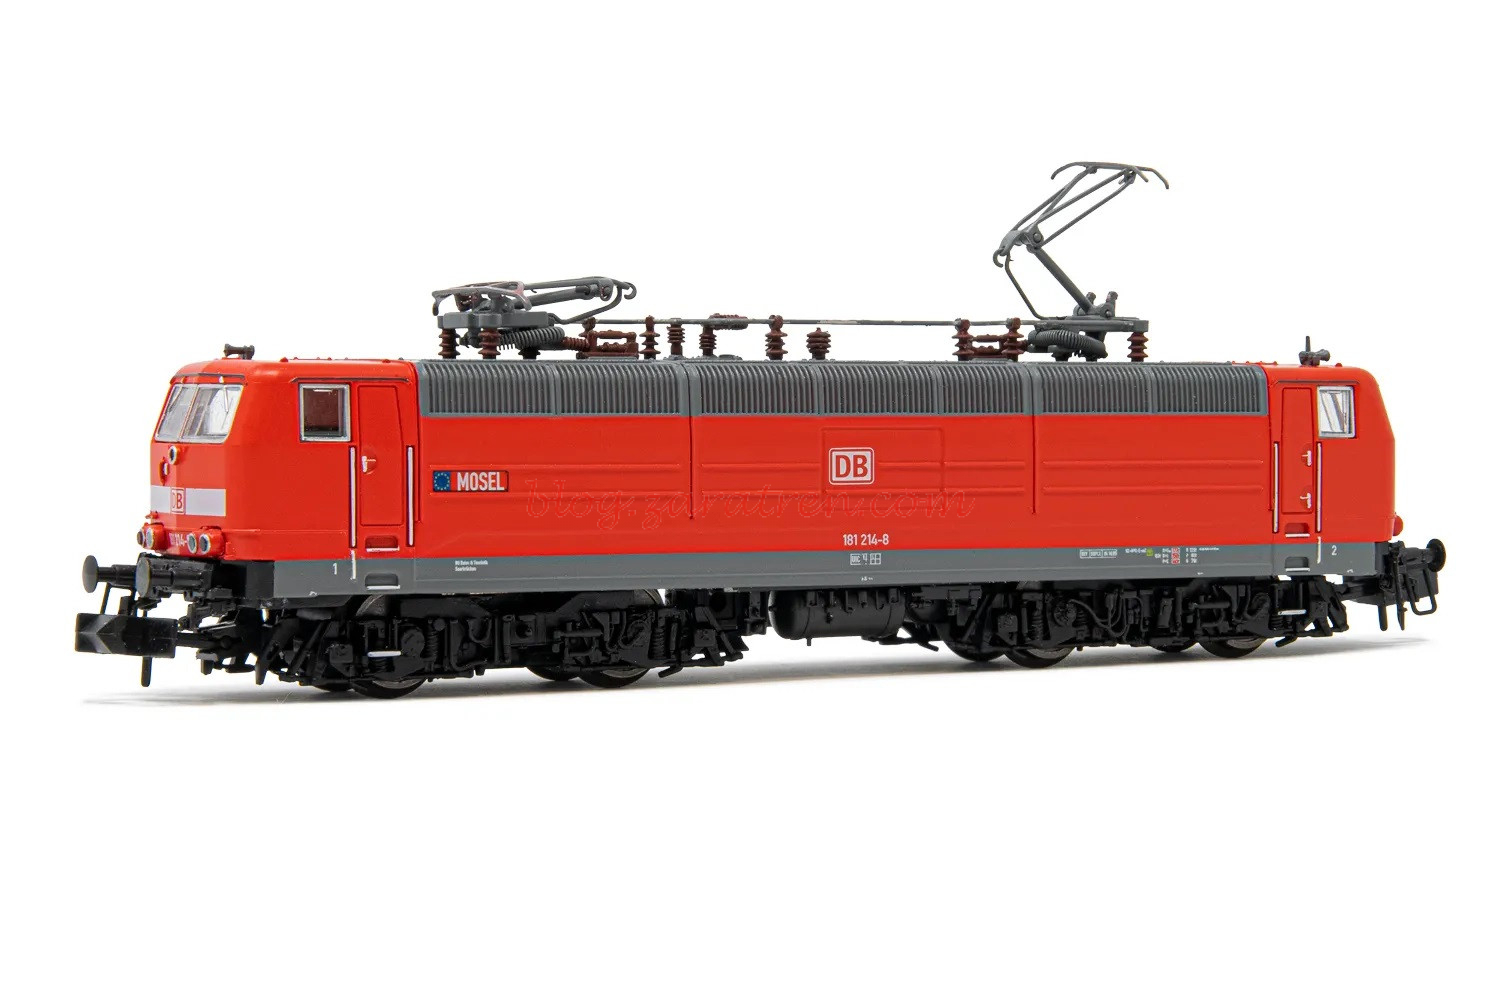 Arnold – Locomotora Electrica clase 181.2 Dec. Rojo, Epoca V, Escala N, Analogica, Ref: HN2493